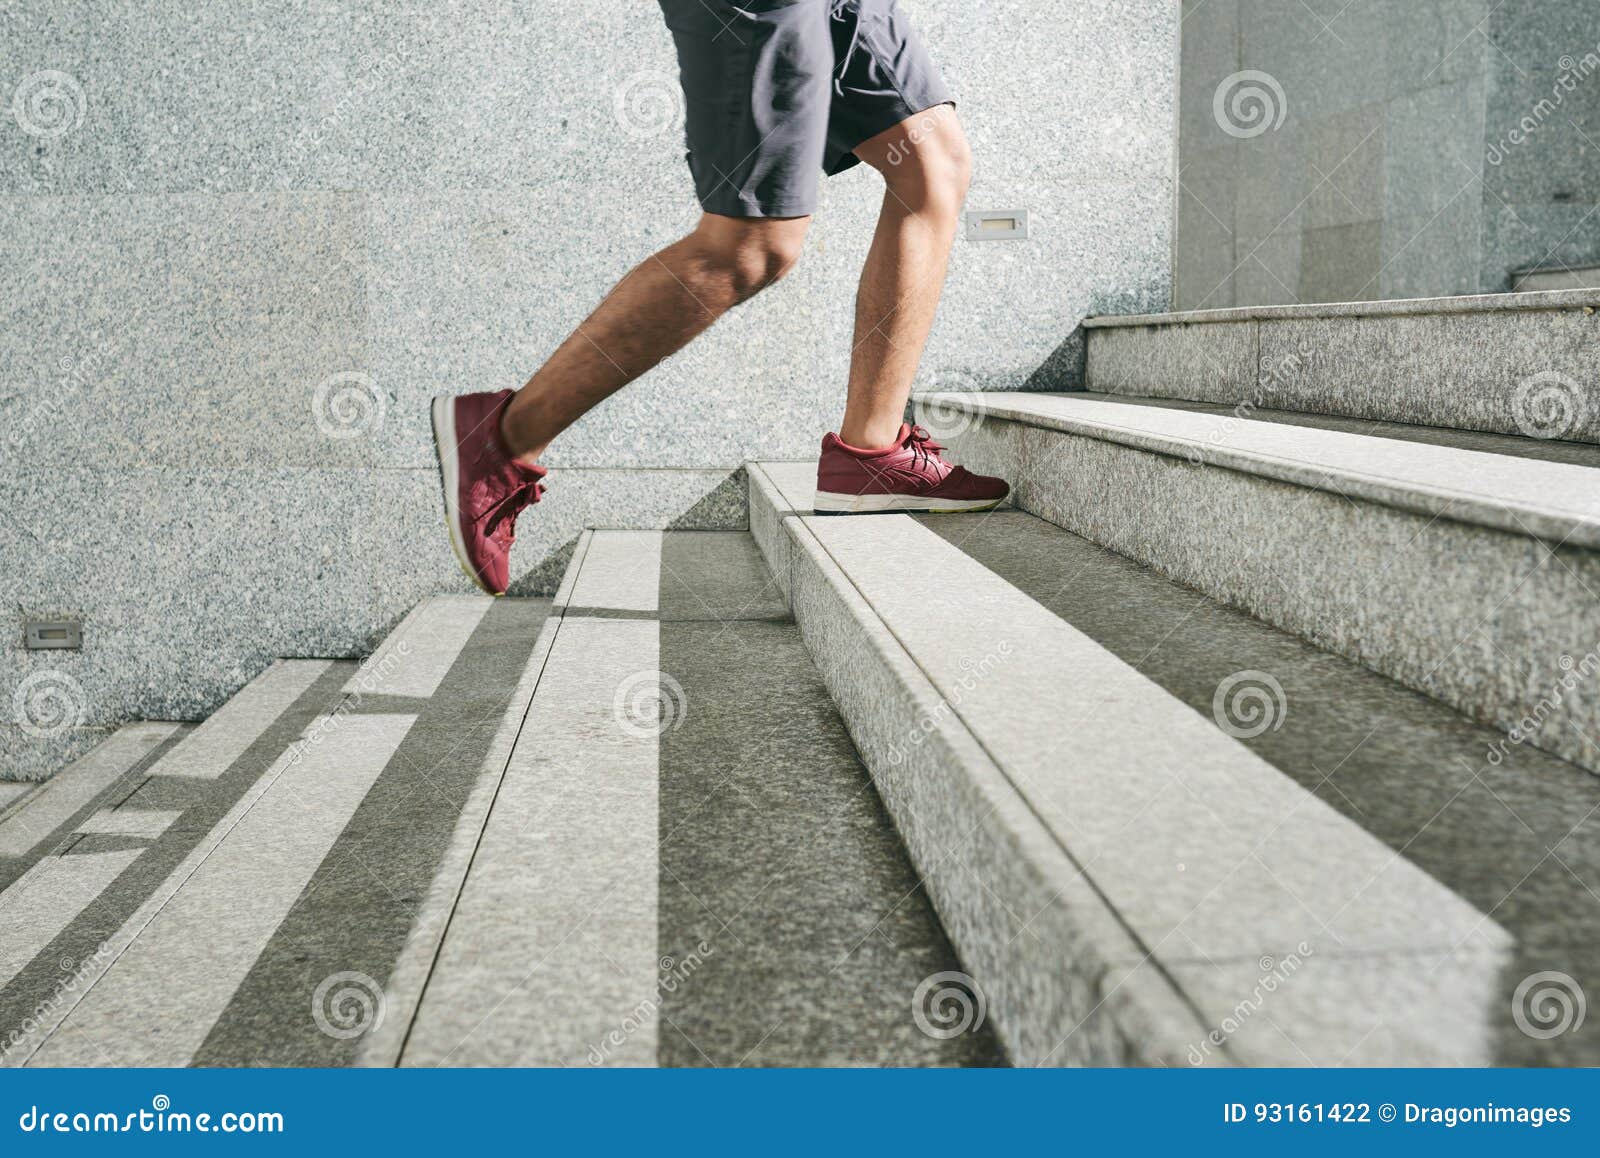 Не толкать впереди идущих по лестнице. Ступенька для ног. Ноги идут по ступенькам. Человек на ступеньках. Нога человека на лестнице.